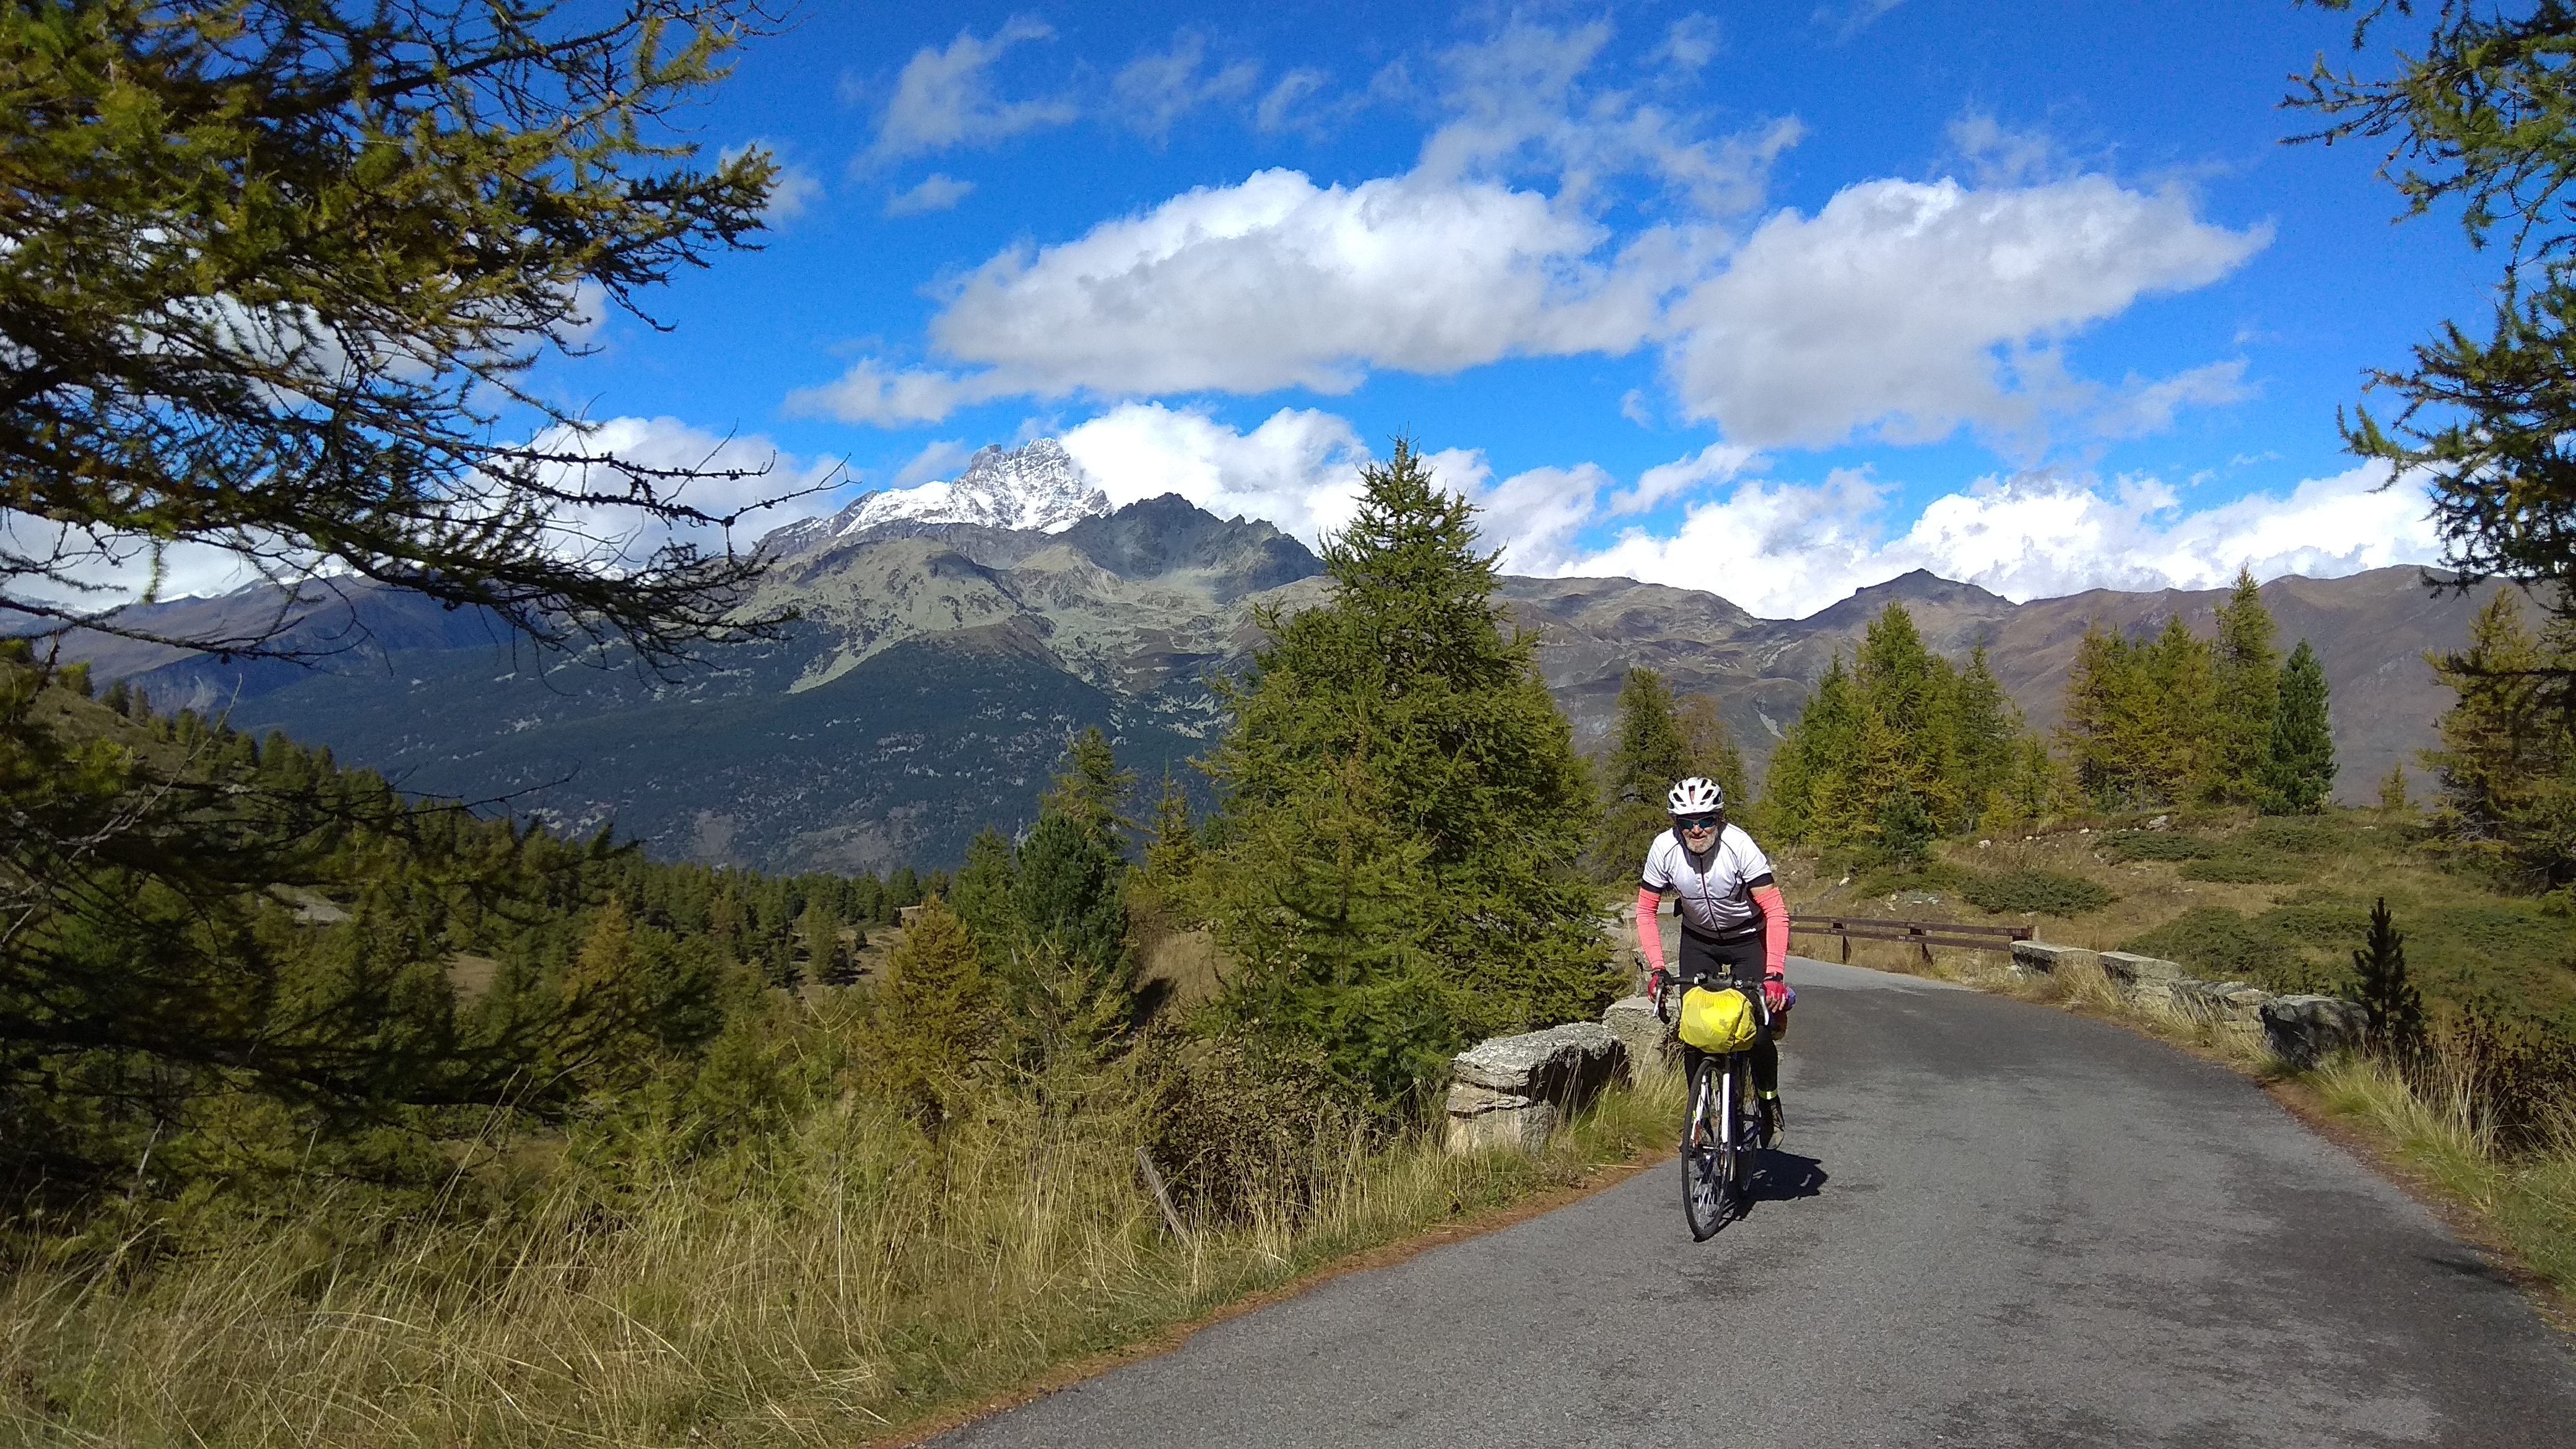 Cole di Sampeyre, 
3841 m-es Monviso im Hintergrund, suche Partnerin für Radtouren